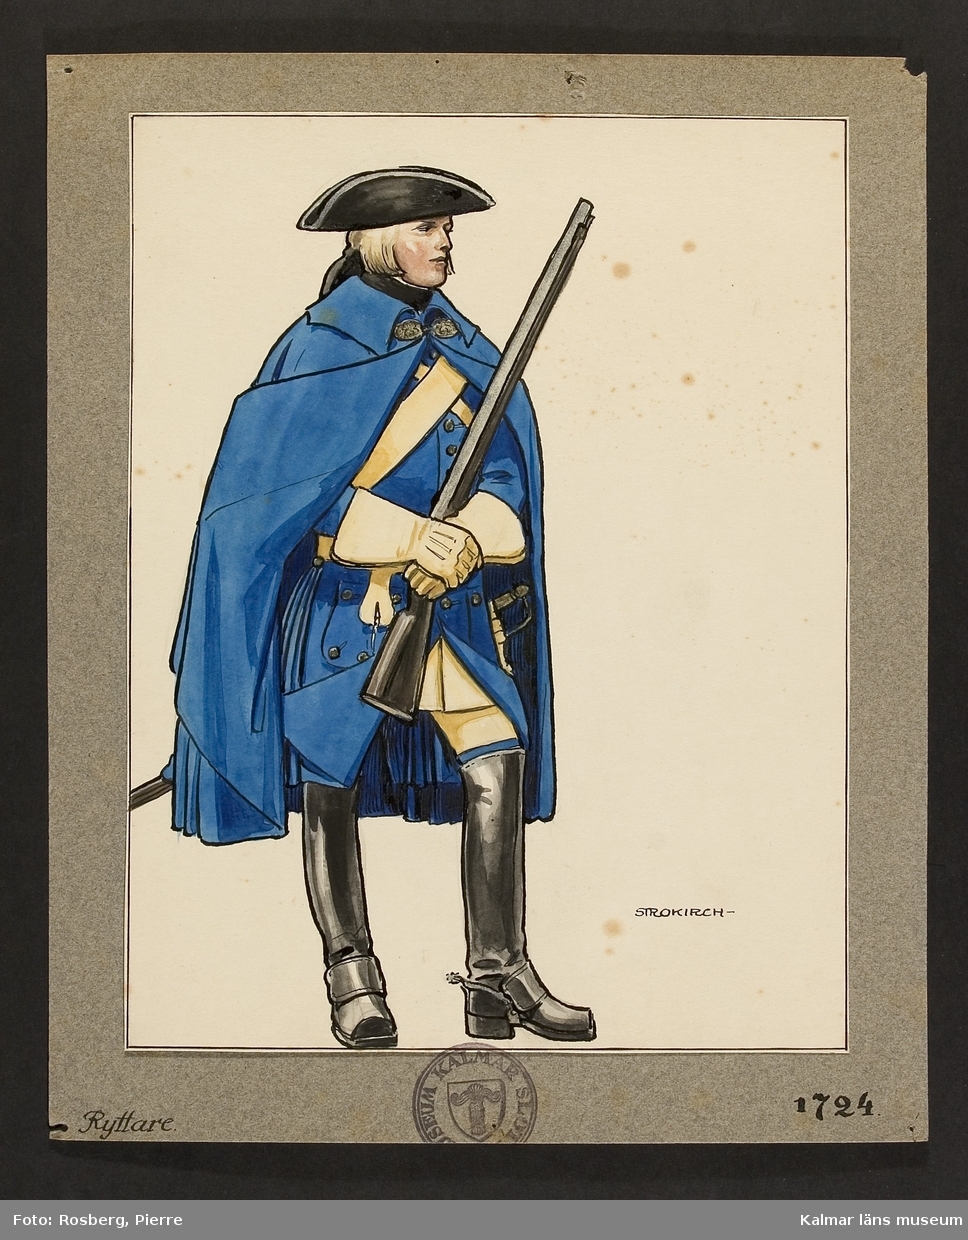 Motiv med ryttare som visar utrustning, uniform och tillbehör vid Smålands husarregemente 1724.